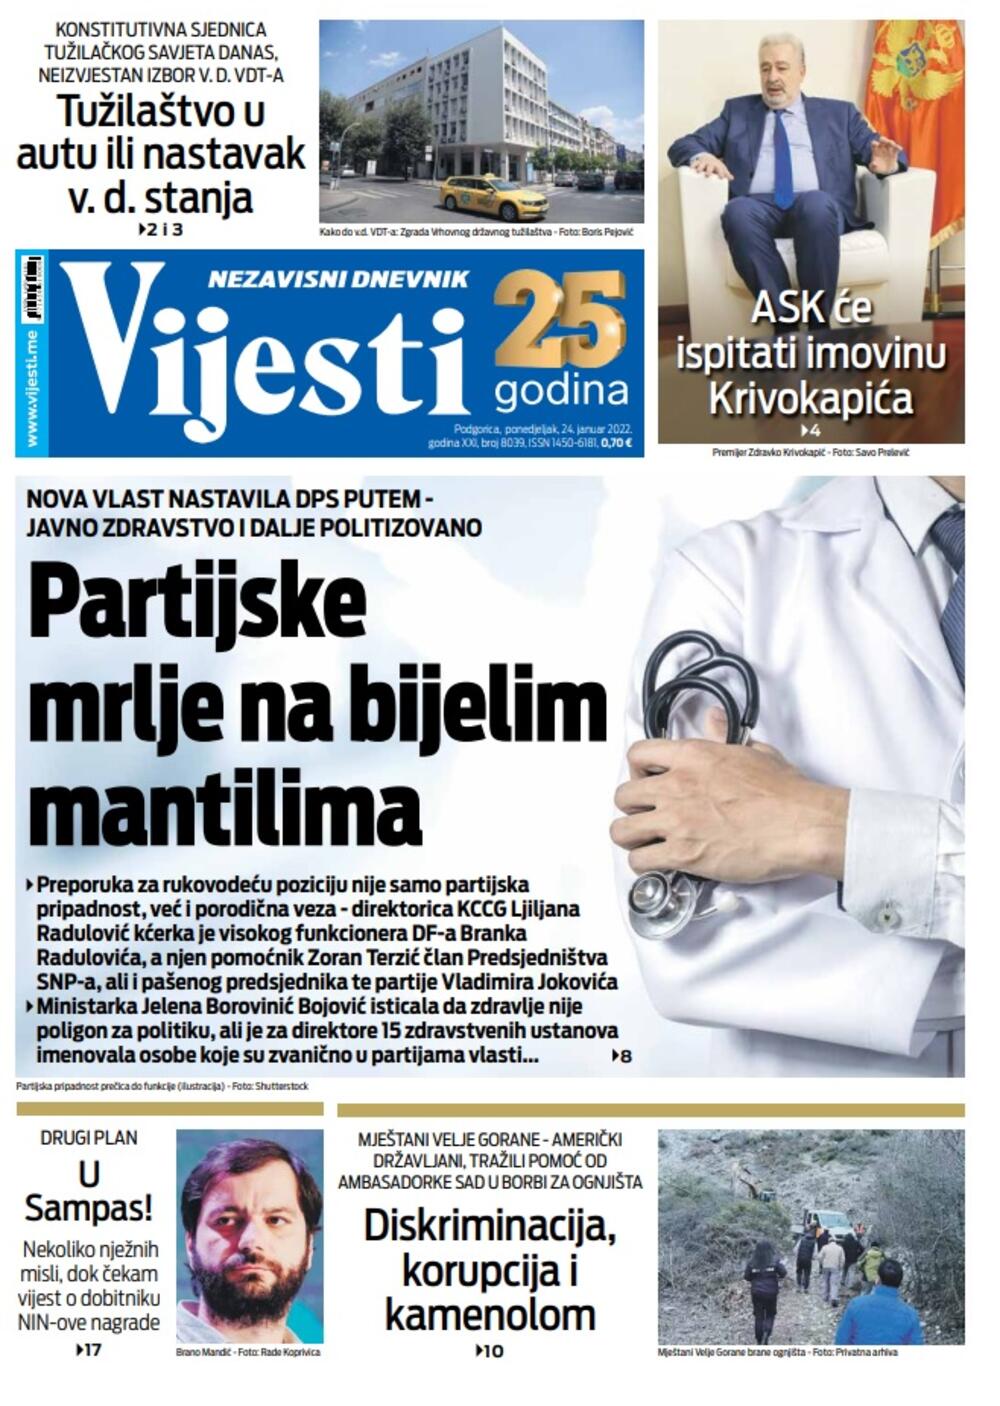 Naslovna strana "Vijesti" za ponedjeljak 24. januar 2022. godine., Foto: Vijesti